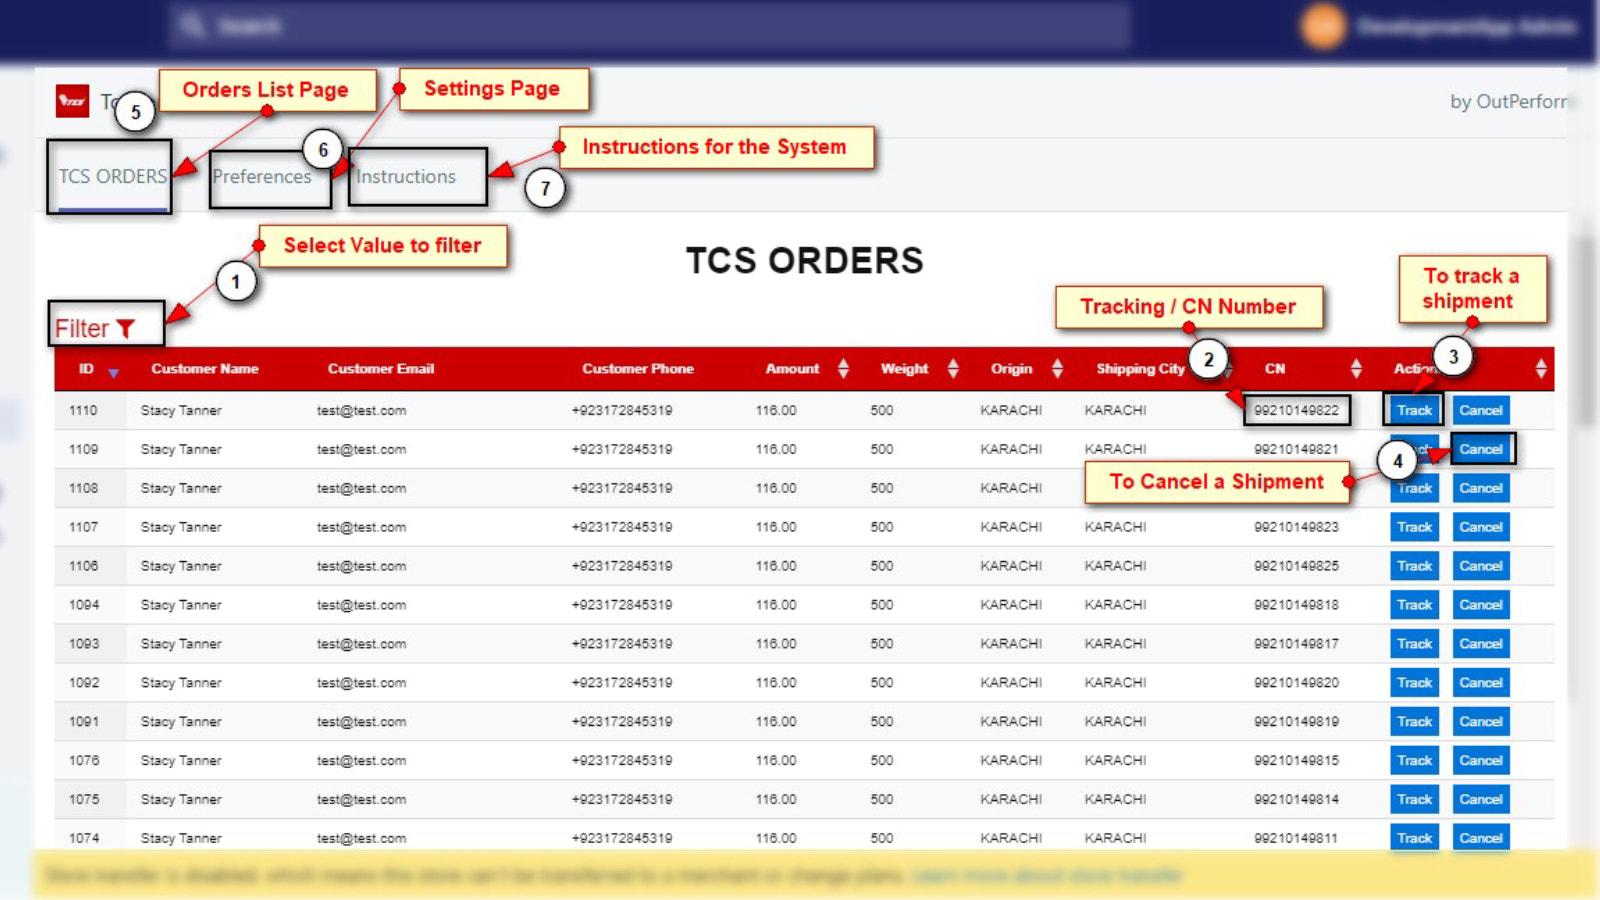 Alle weitergeleiteten Bestellungen wurden an das TCS Customer COD Portal gesendet und verfolgt.